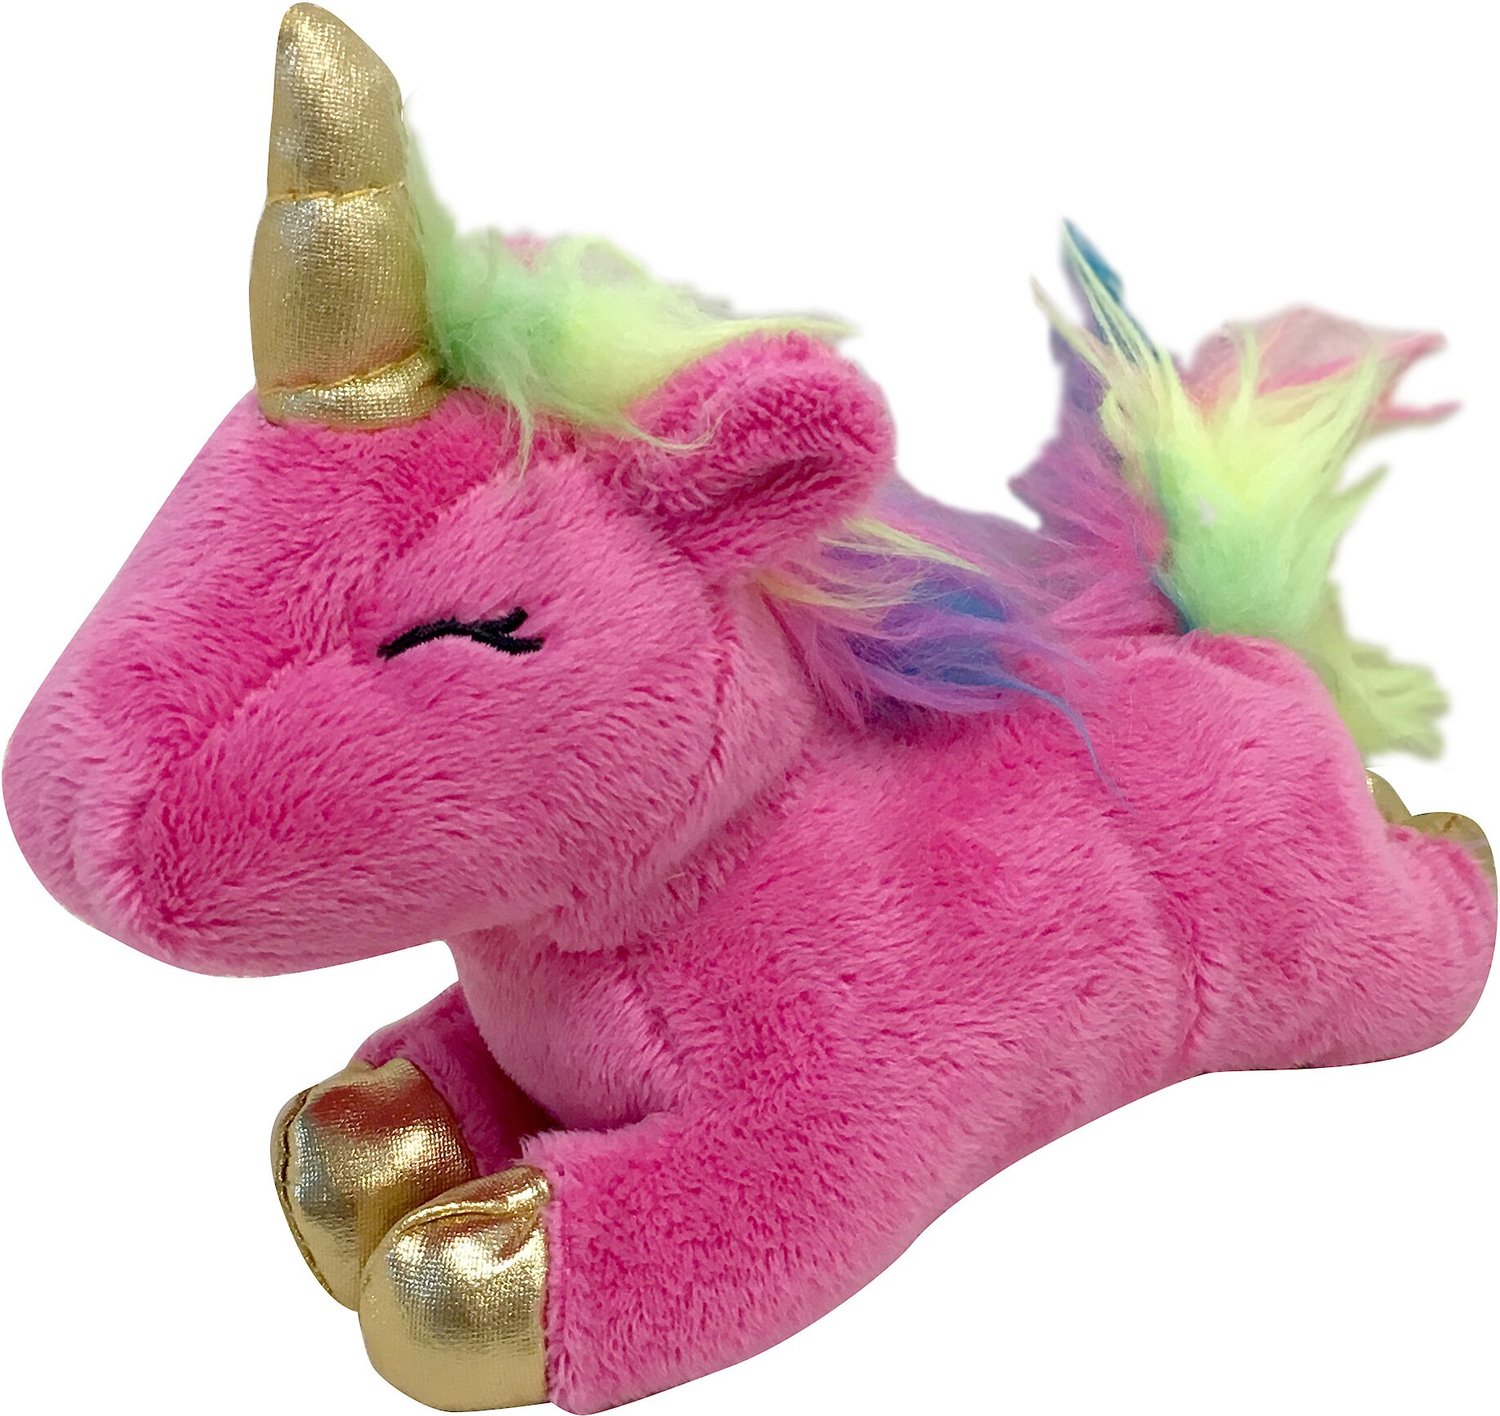 pink plush unicorn